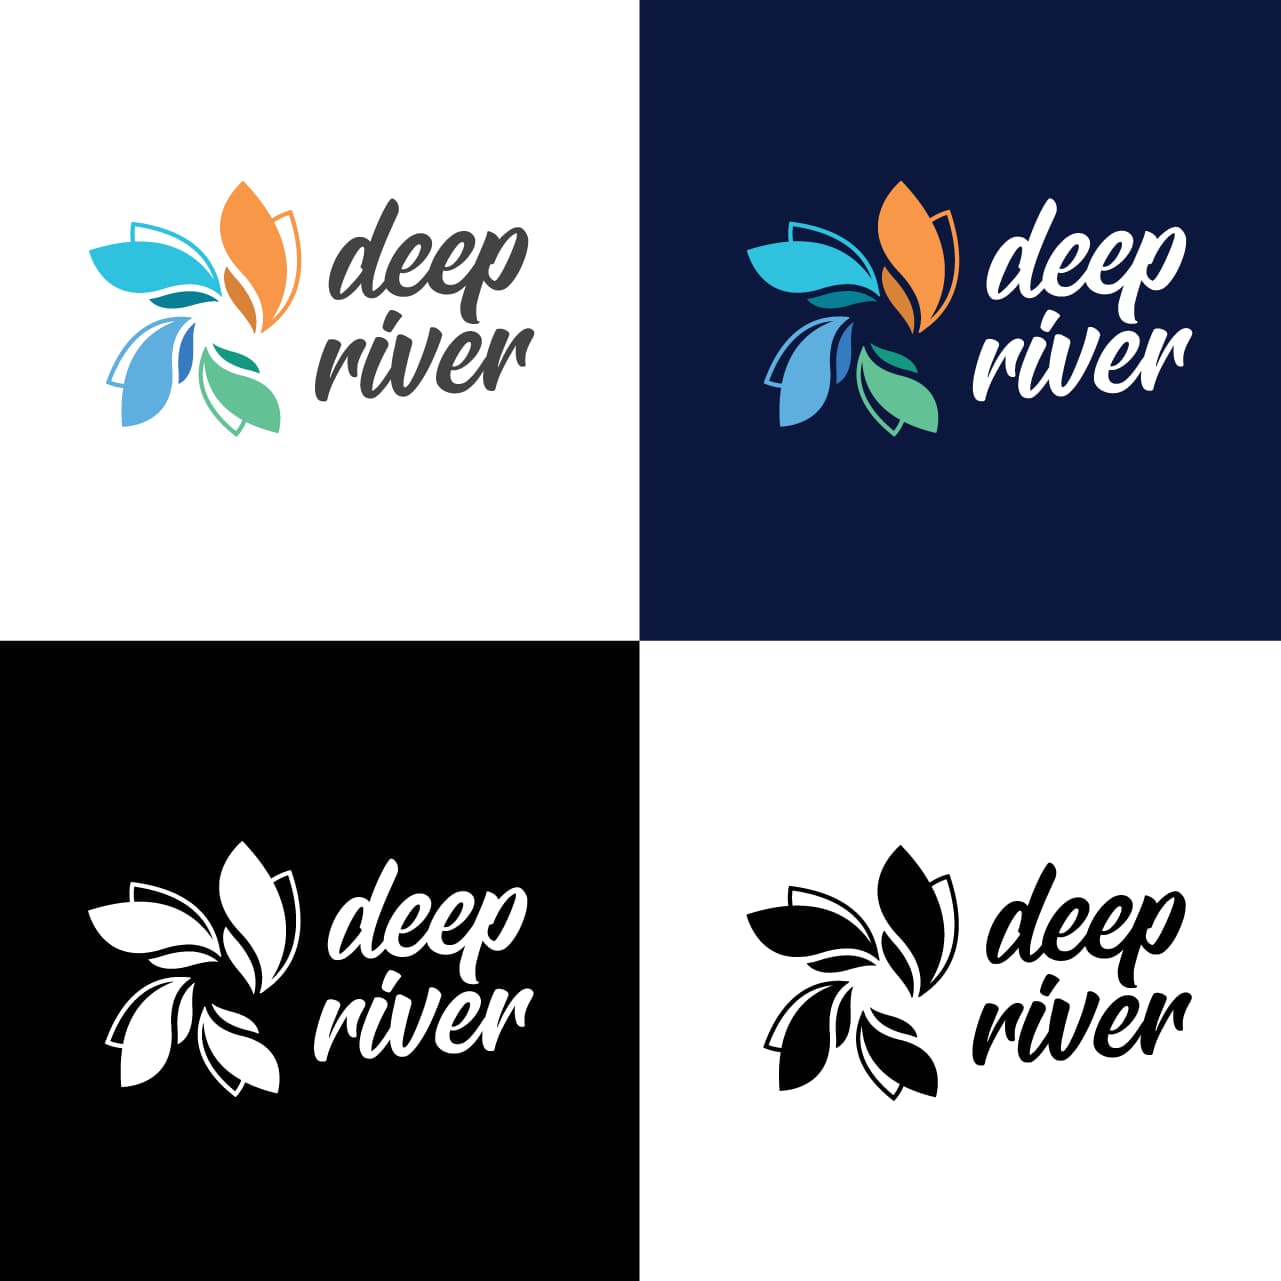 Deep River logo variations